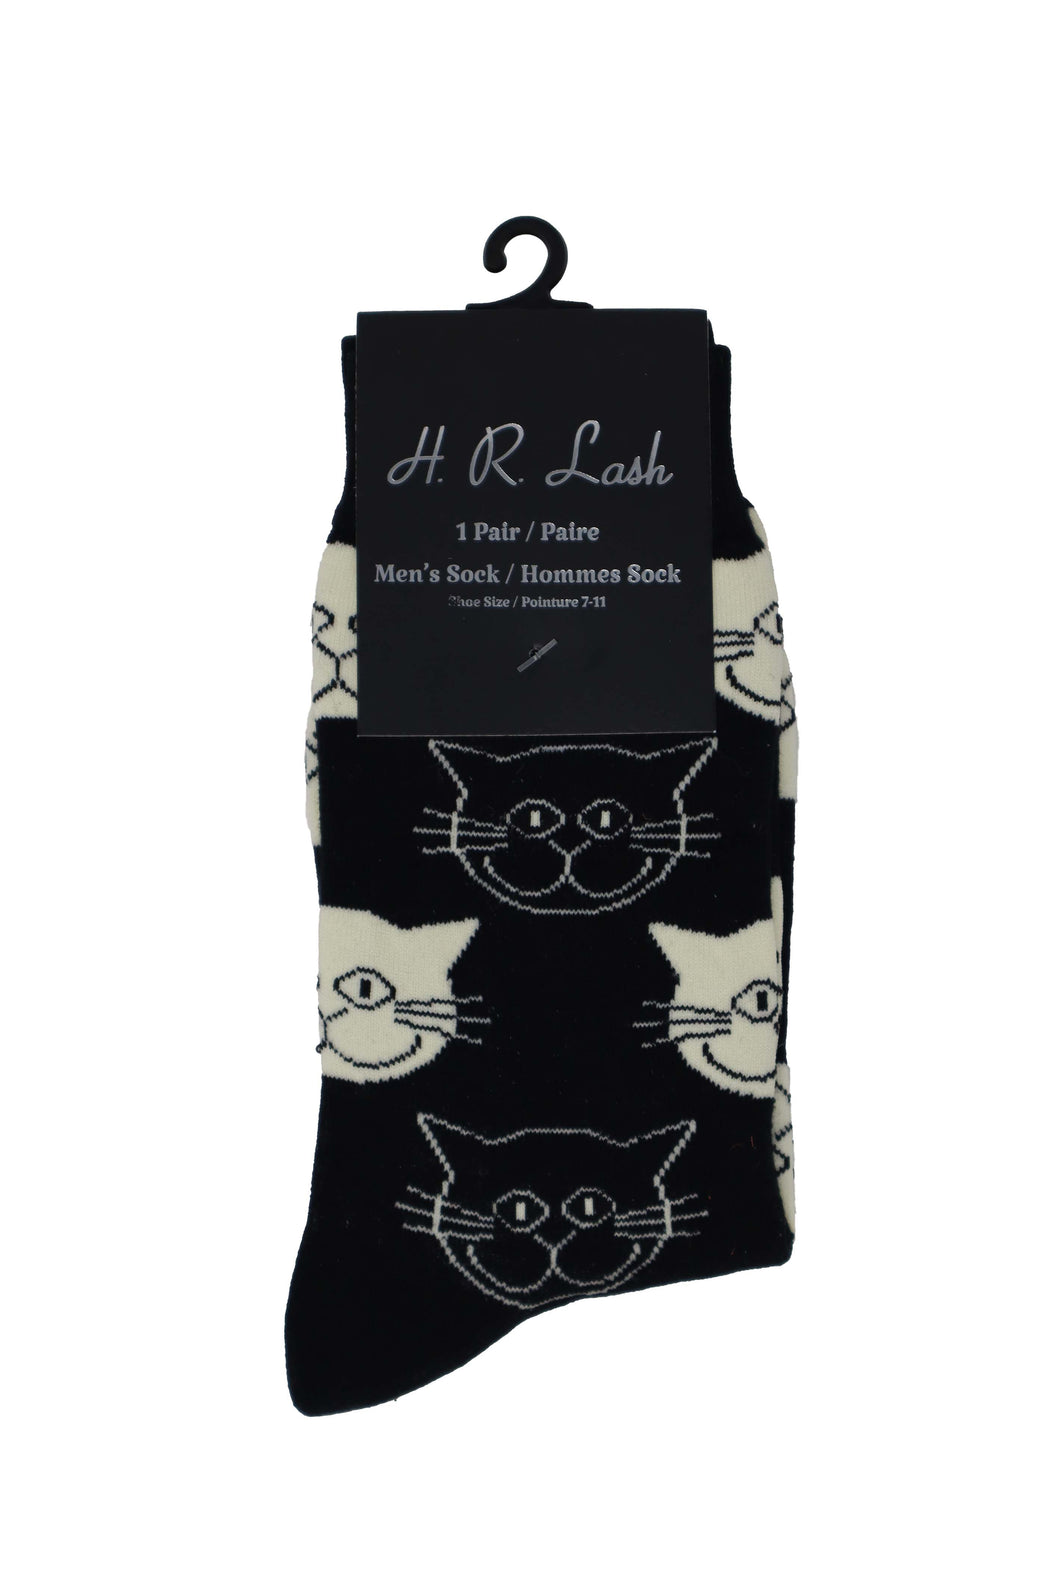 H. R. Lash | FS187 | Fun Socks | Black Cat